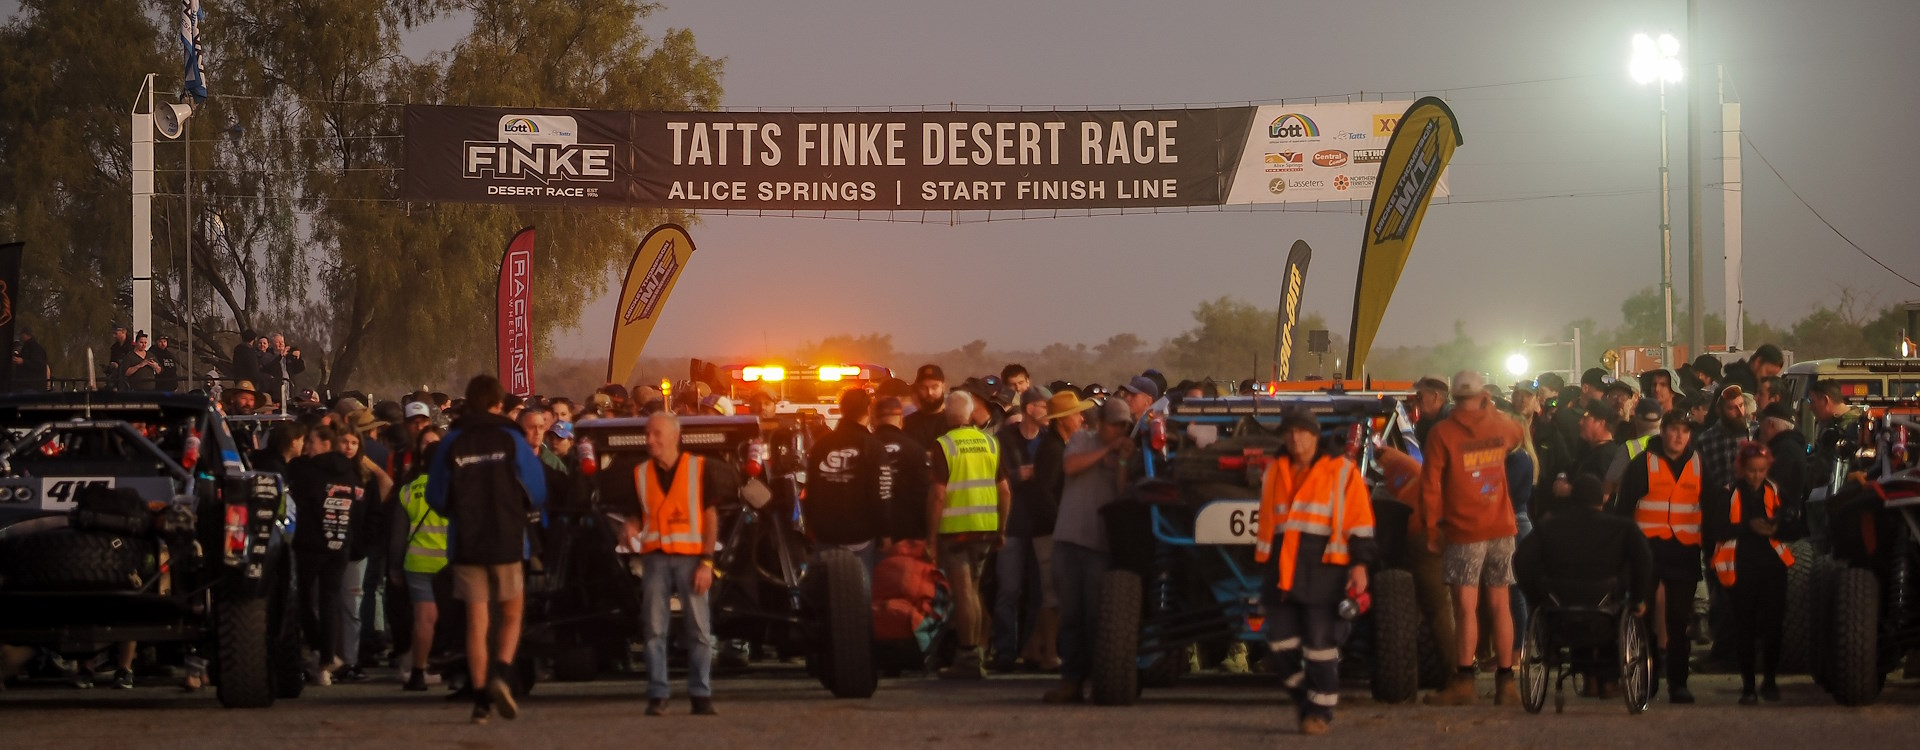 Finke Desert Race